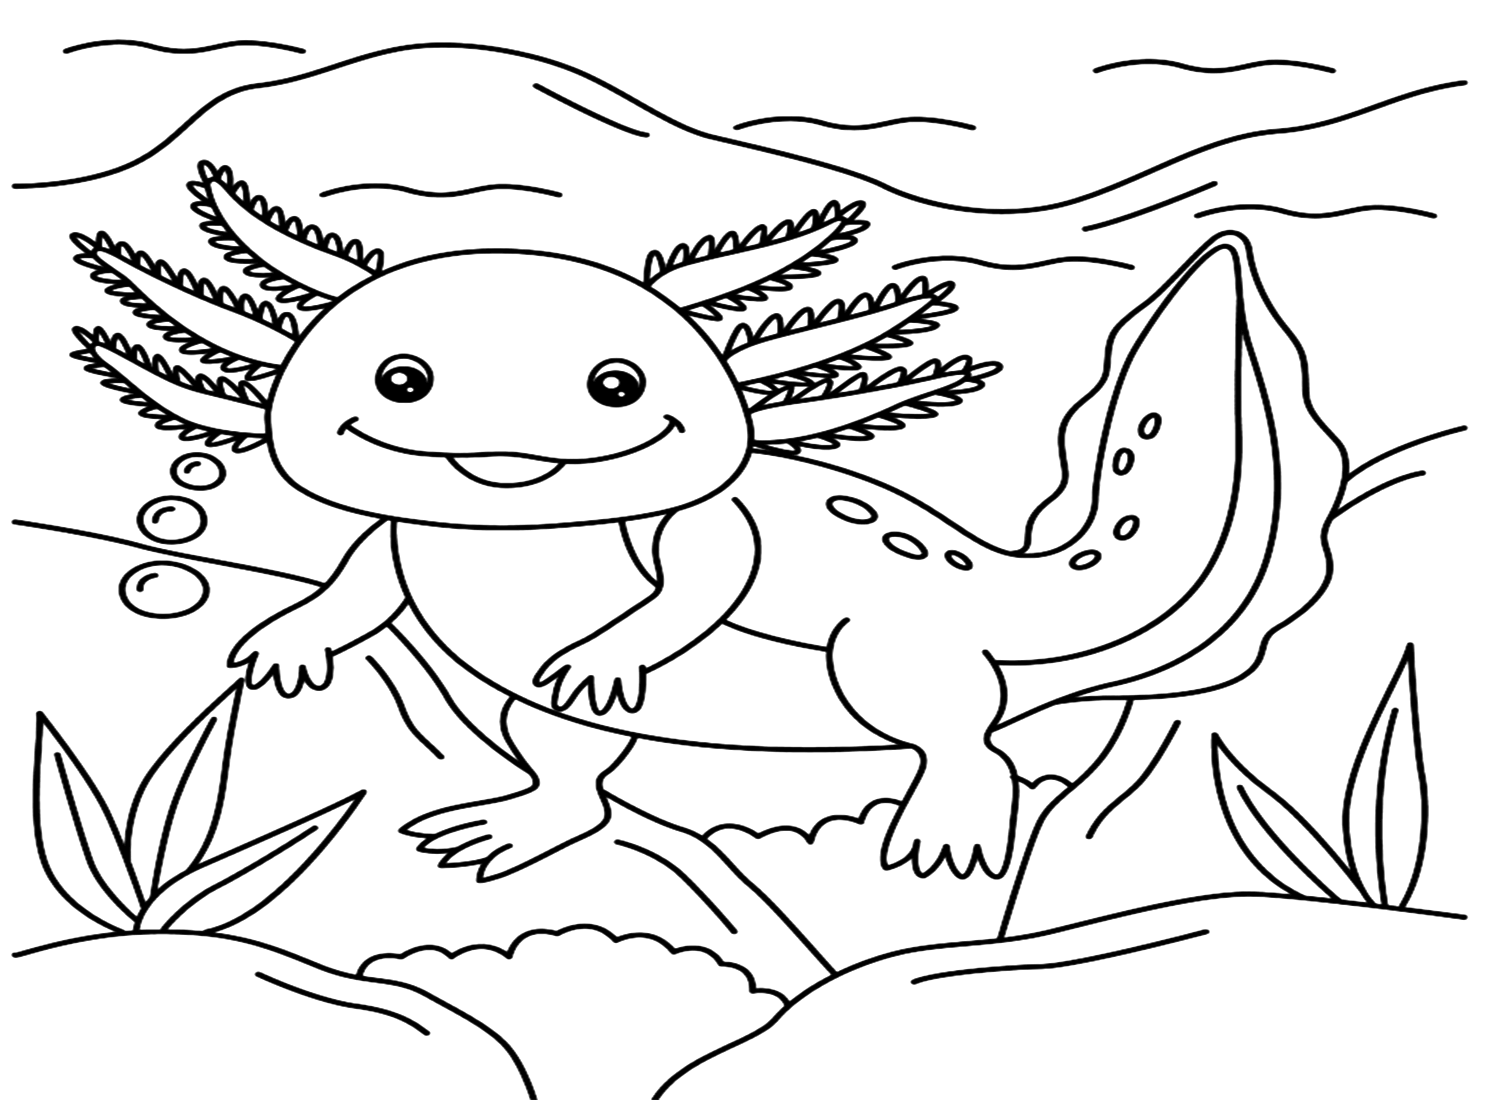 Axolotl Smiling Coloring Page